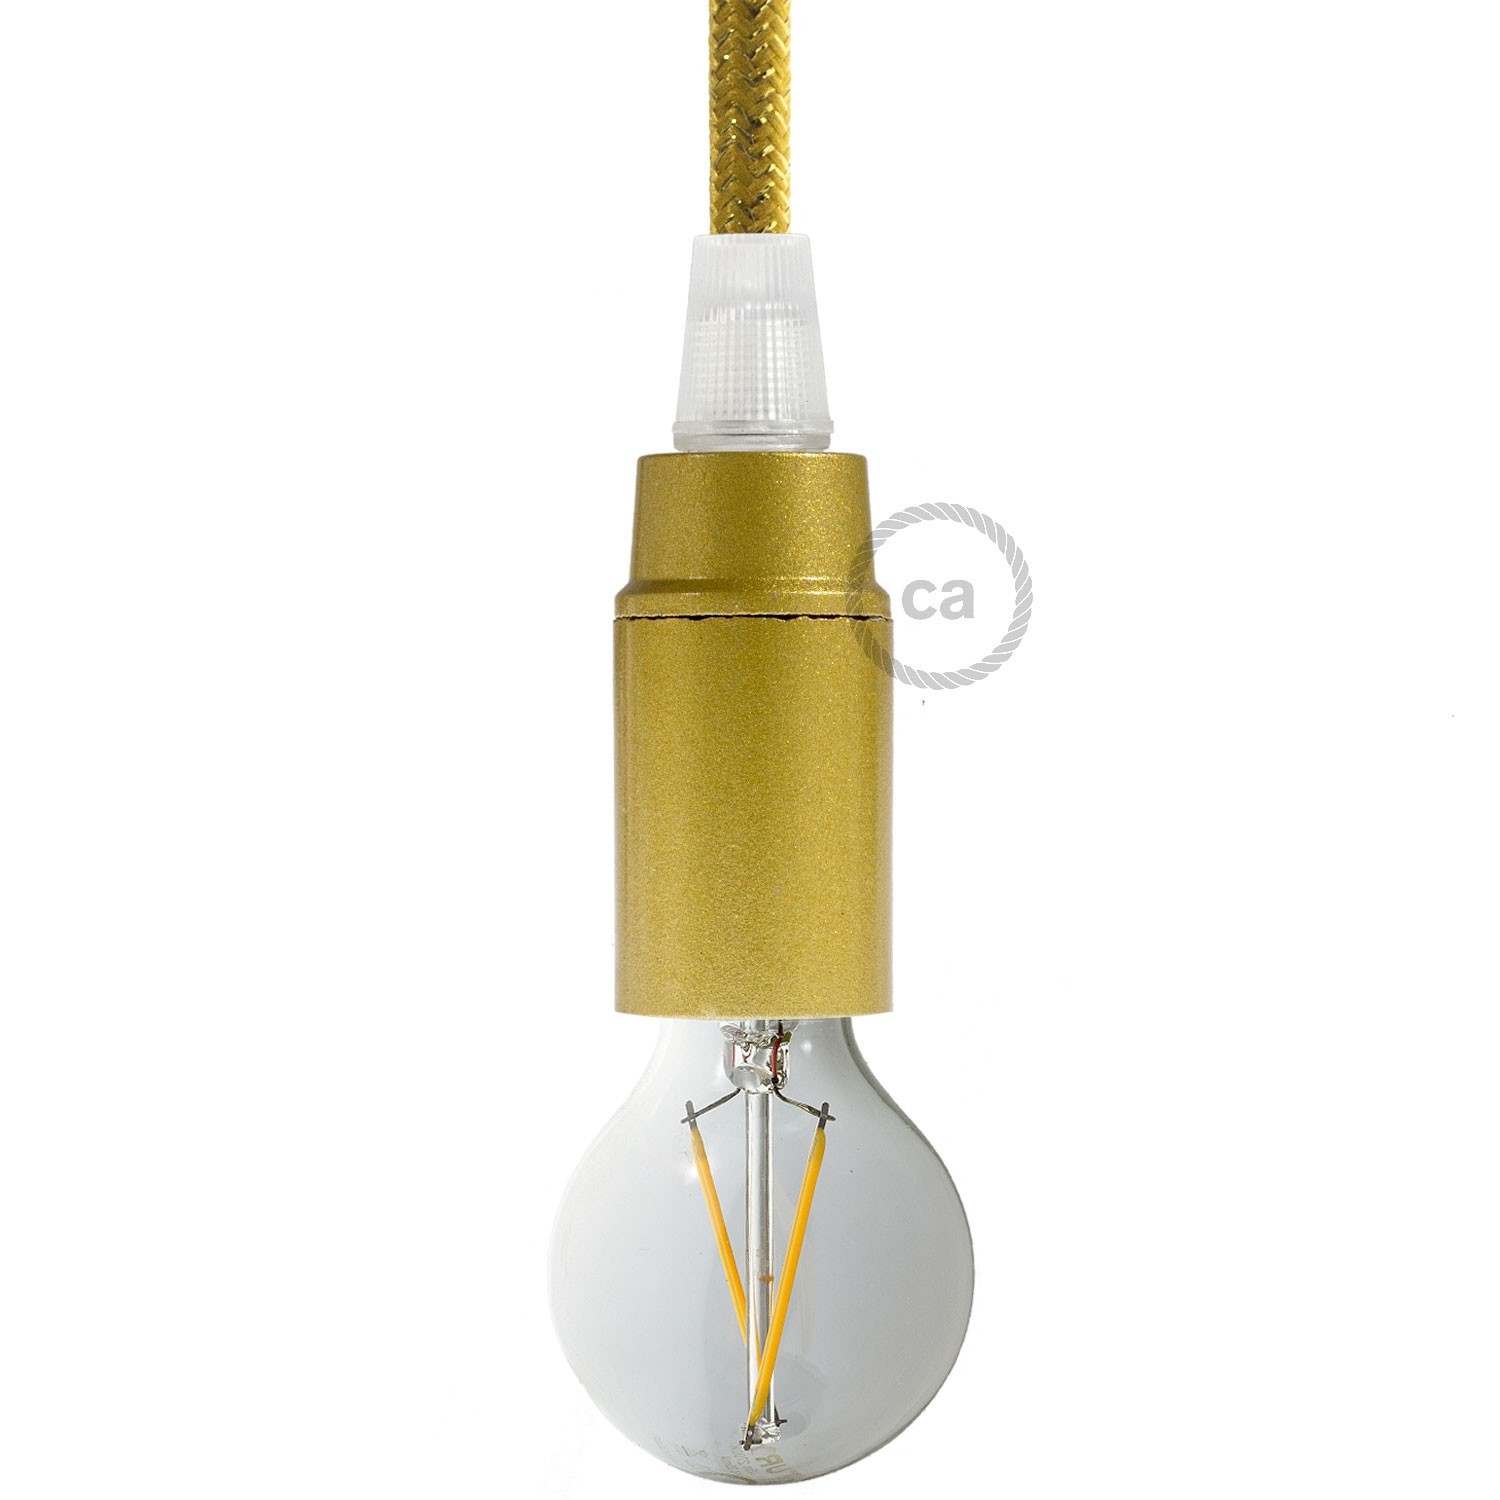 Bakelite E14 lamp holder kit